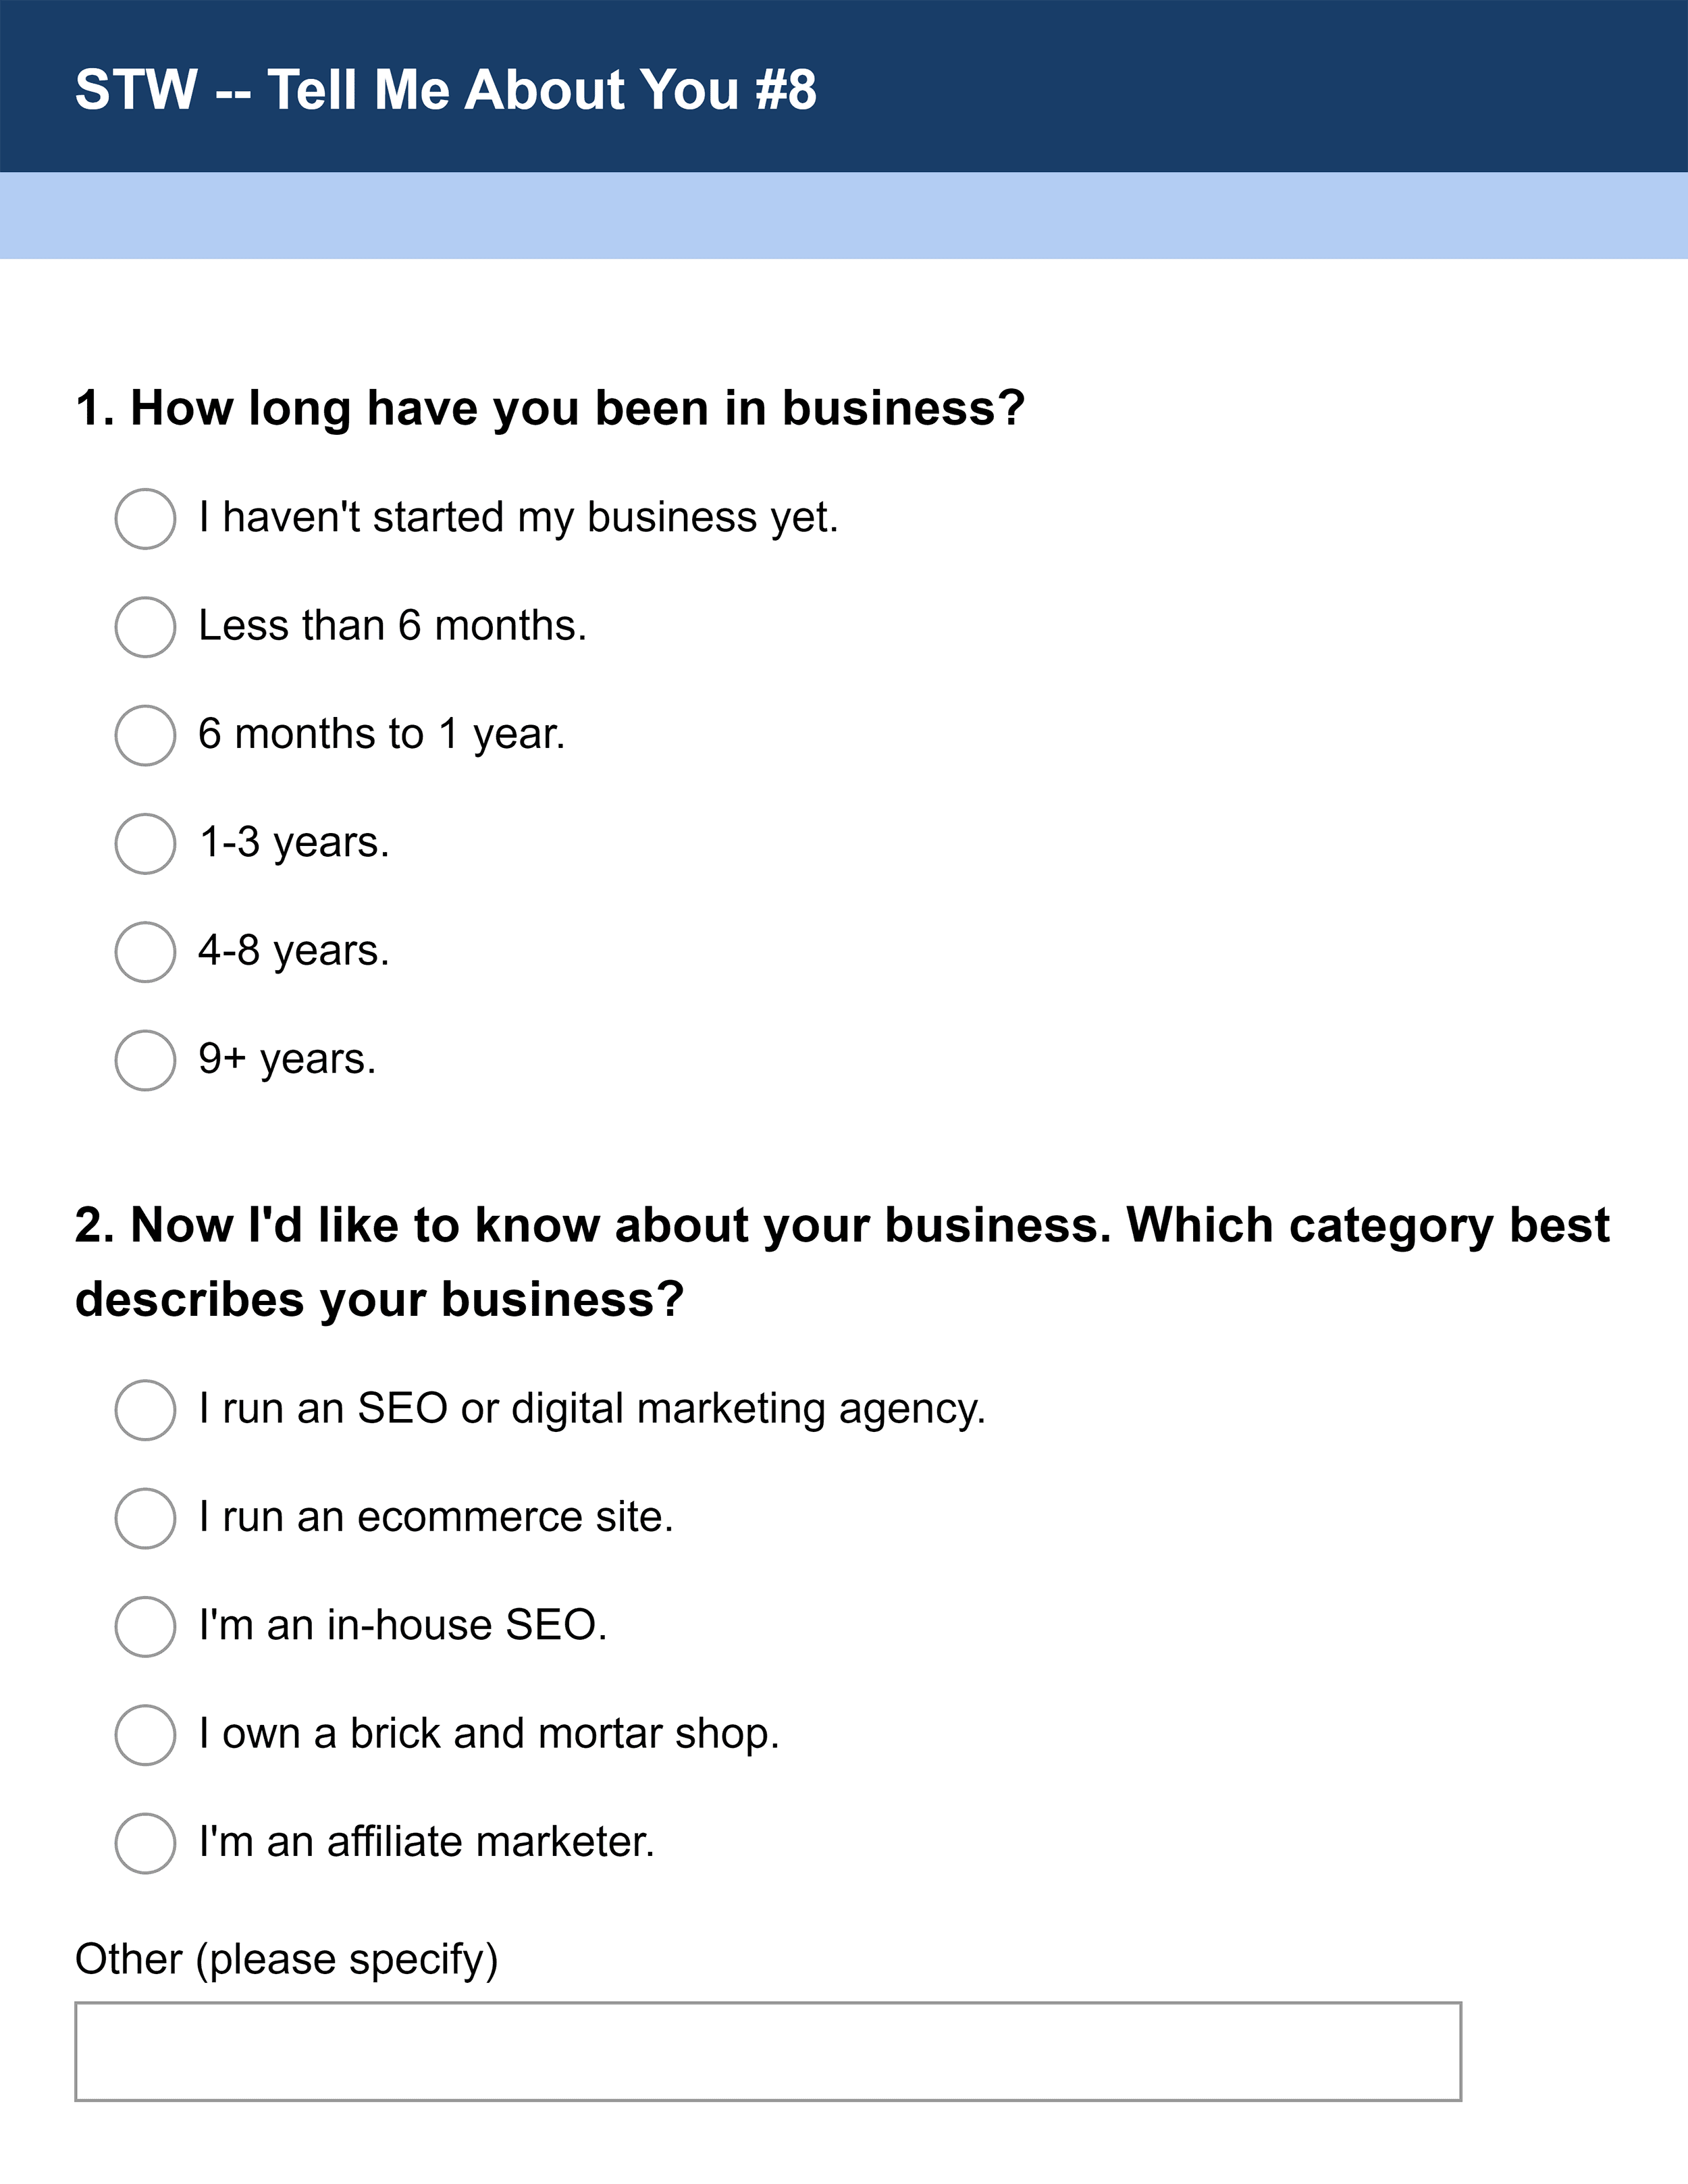 STW survey questions